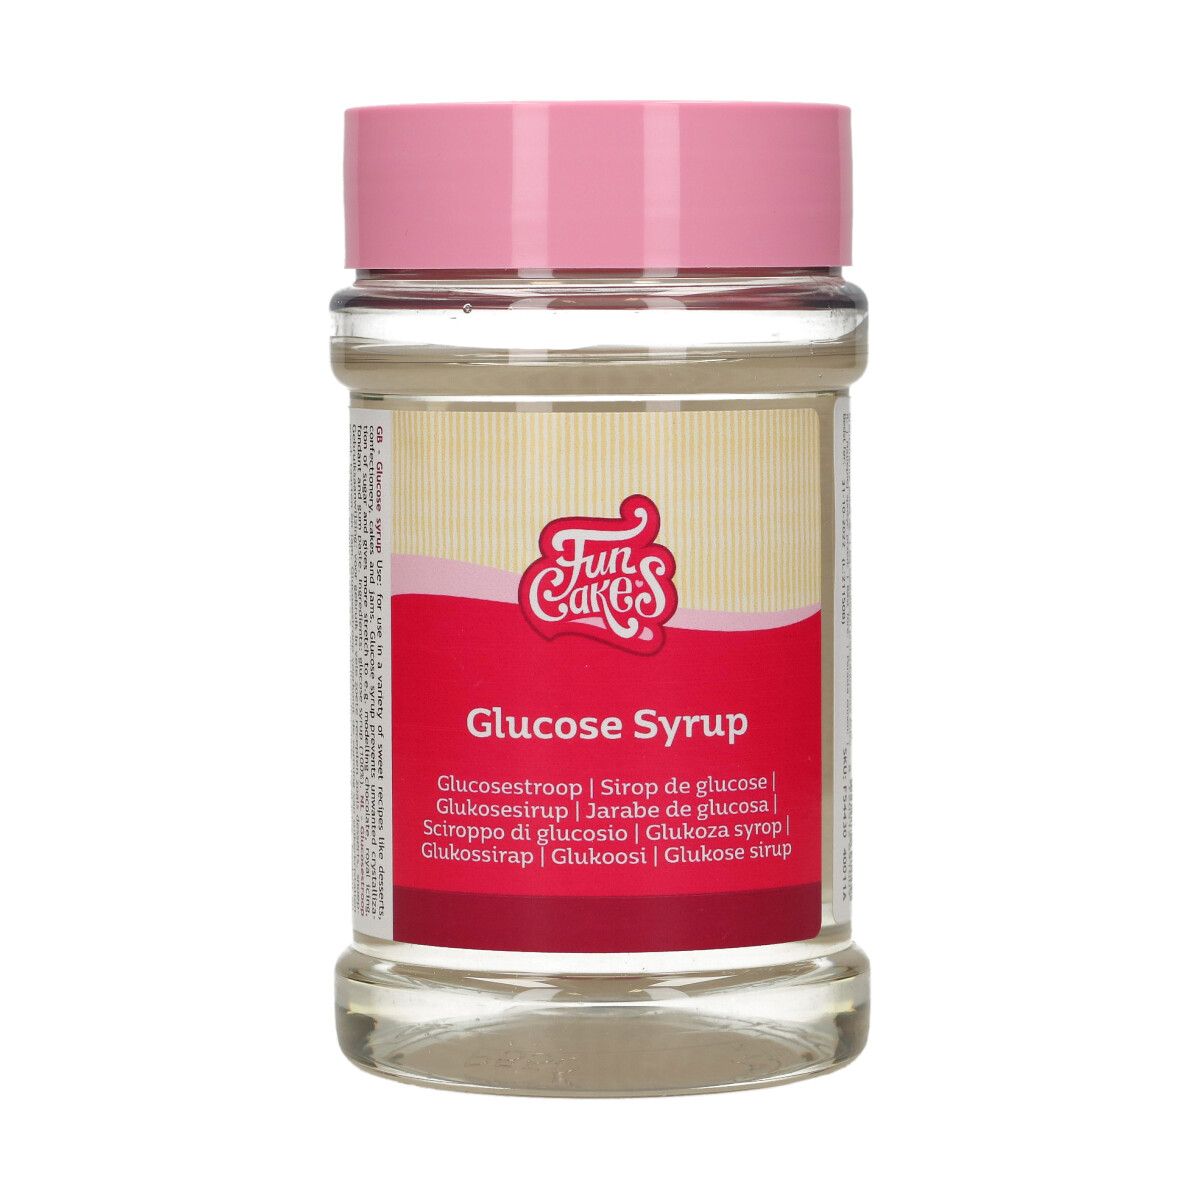 Billede af Glucose Syrup 375 g